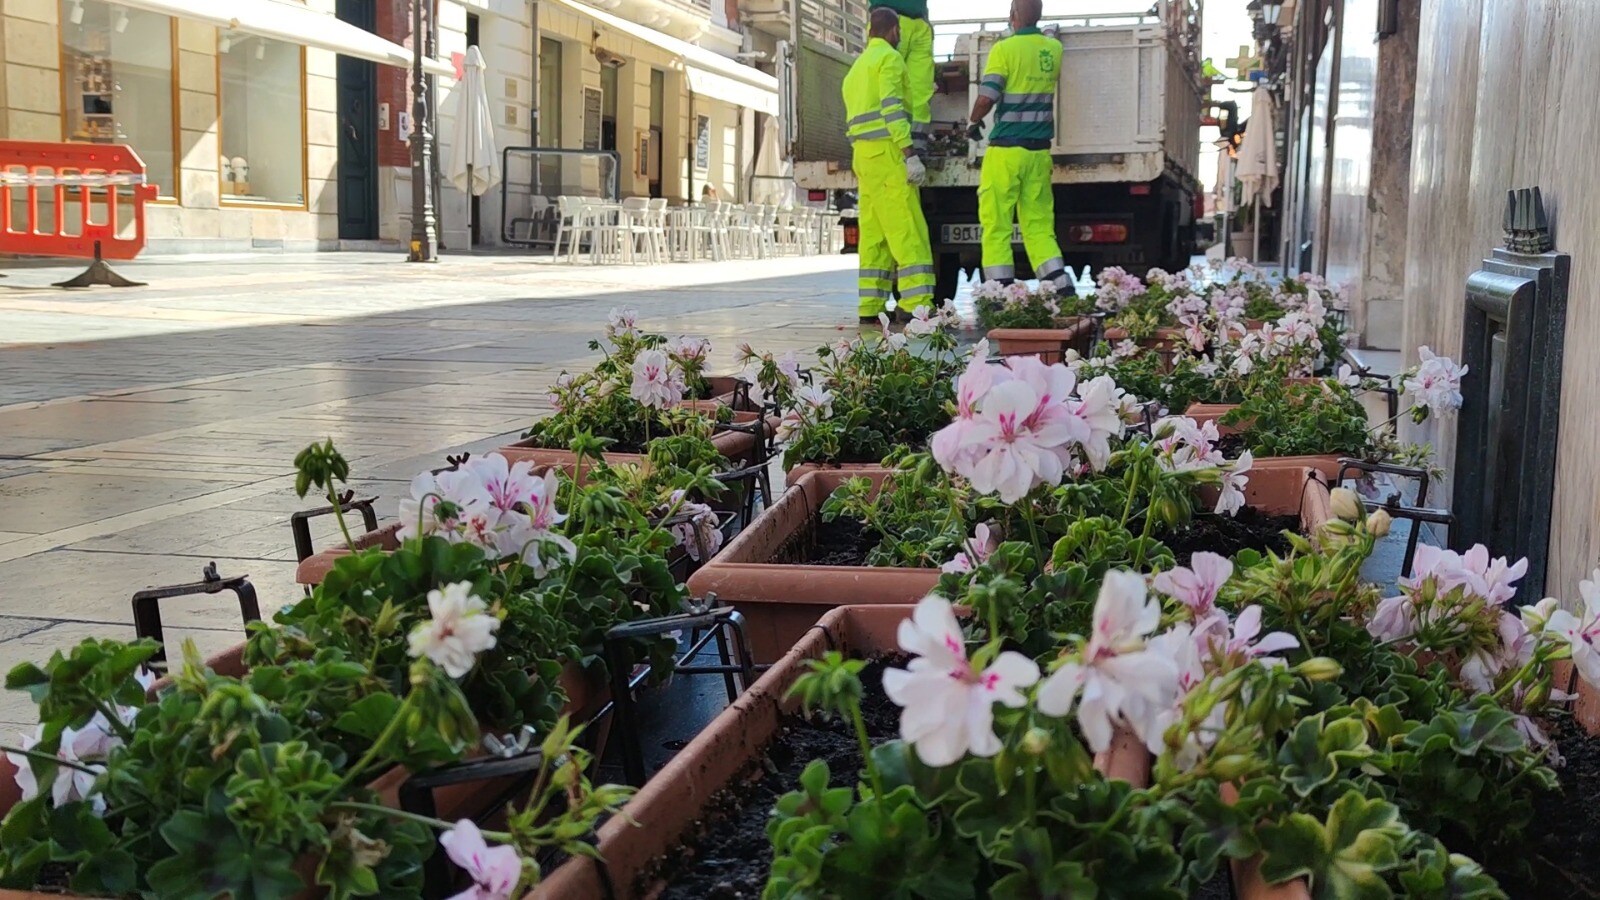 El Ayuntamiento de León acomete la renovación de las flores y maceteros que decoran los balcones de la emblemática vía | 1.400 jardineras de geráneos y ocho maceteros gigantes lucen los colores del verano en diferentes puntos de la ciudad